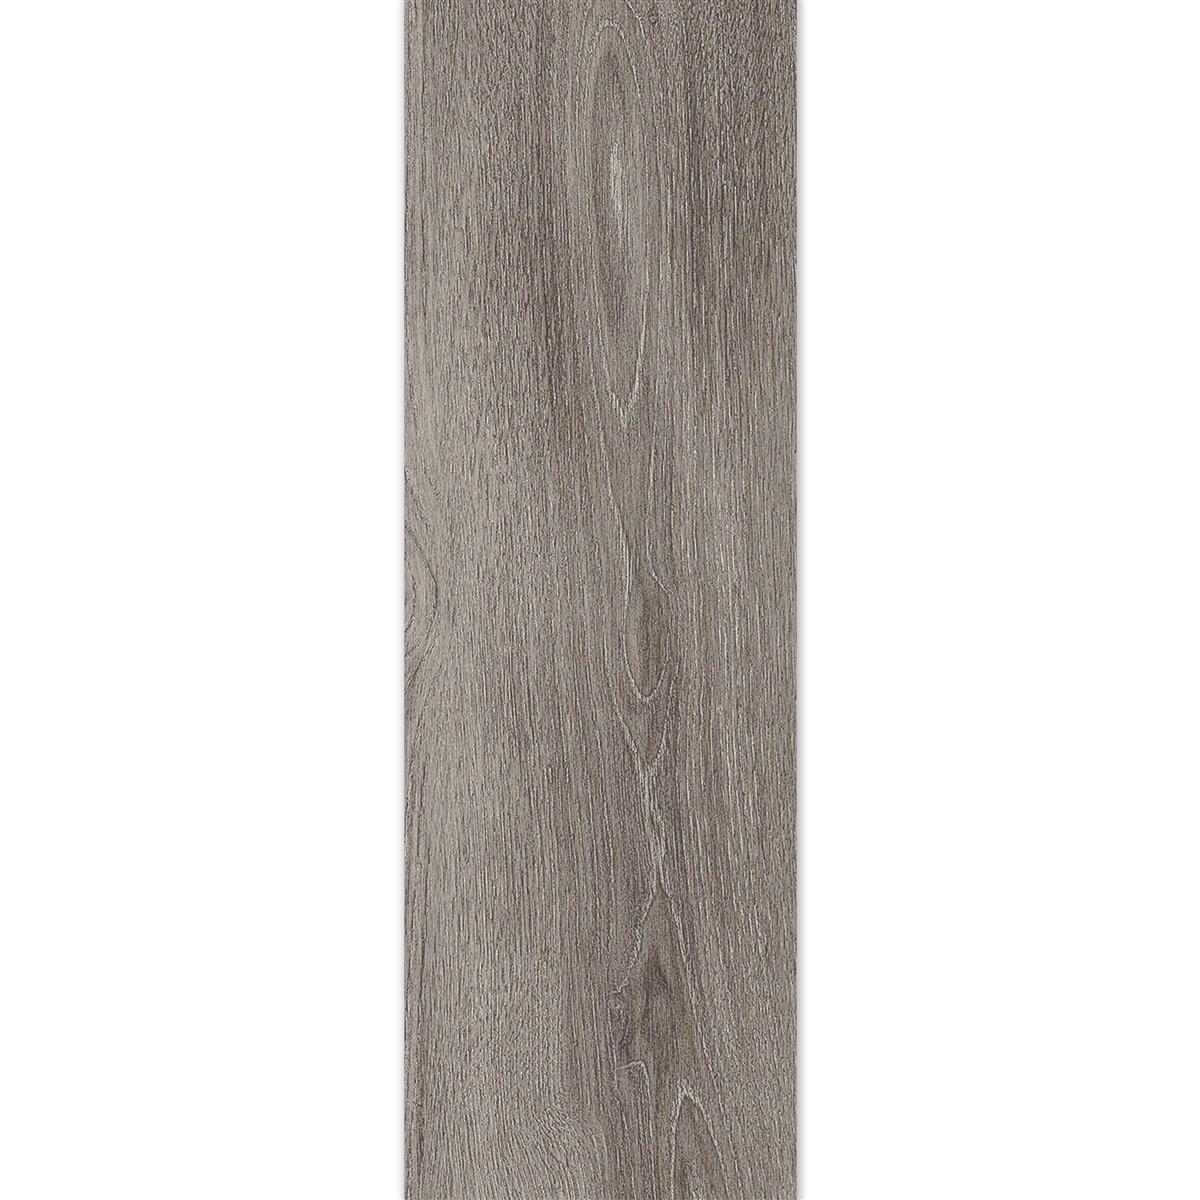 Floor Tiles Regina Wood Optic 20x120cm Silver